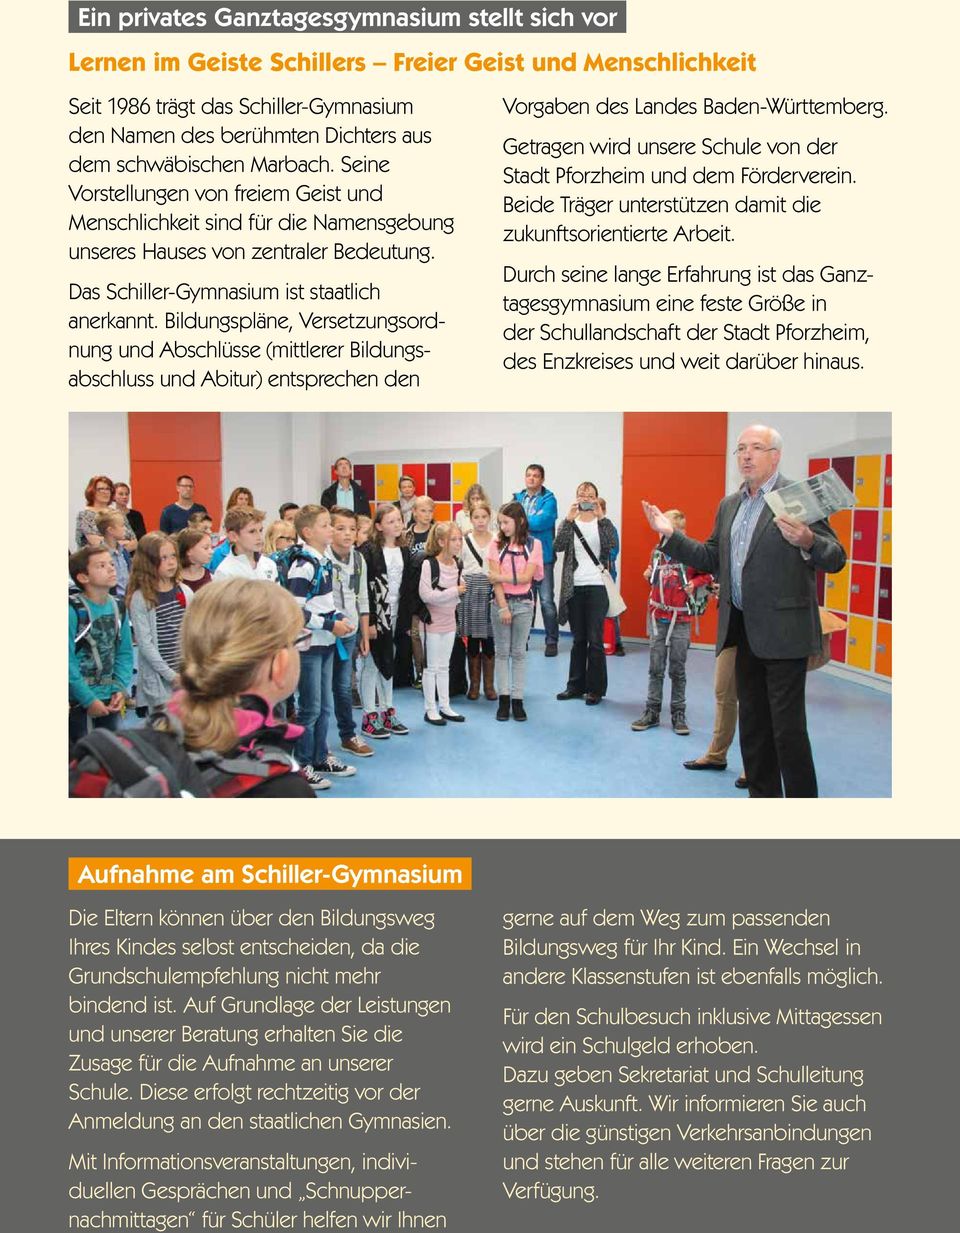 Bildungspläne, Versetzungsordnung und Abschlüsse (mittlerer Bildungsabschluss und Abitur) entsprechen den Vorgaben des Landes Baden-Württemberg.